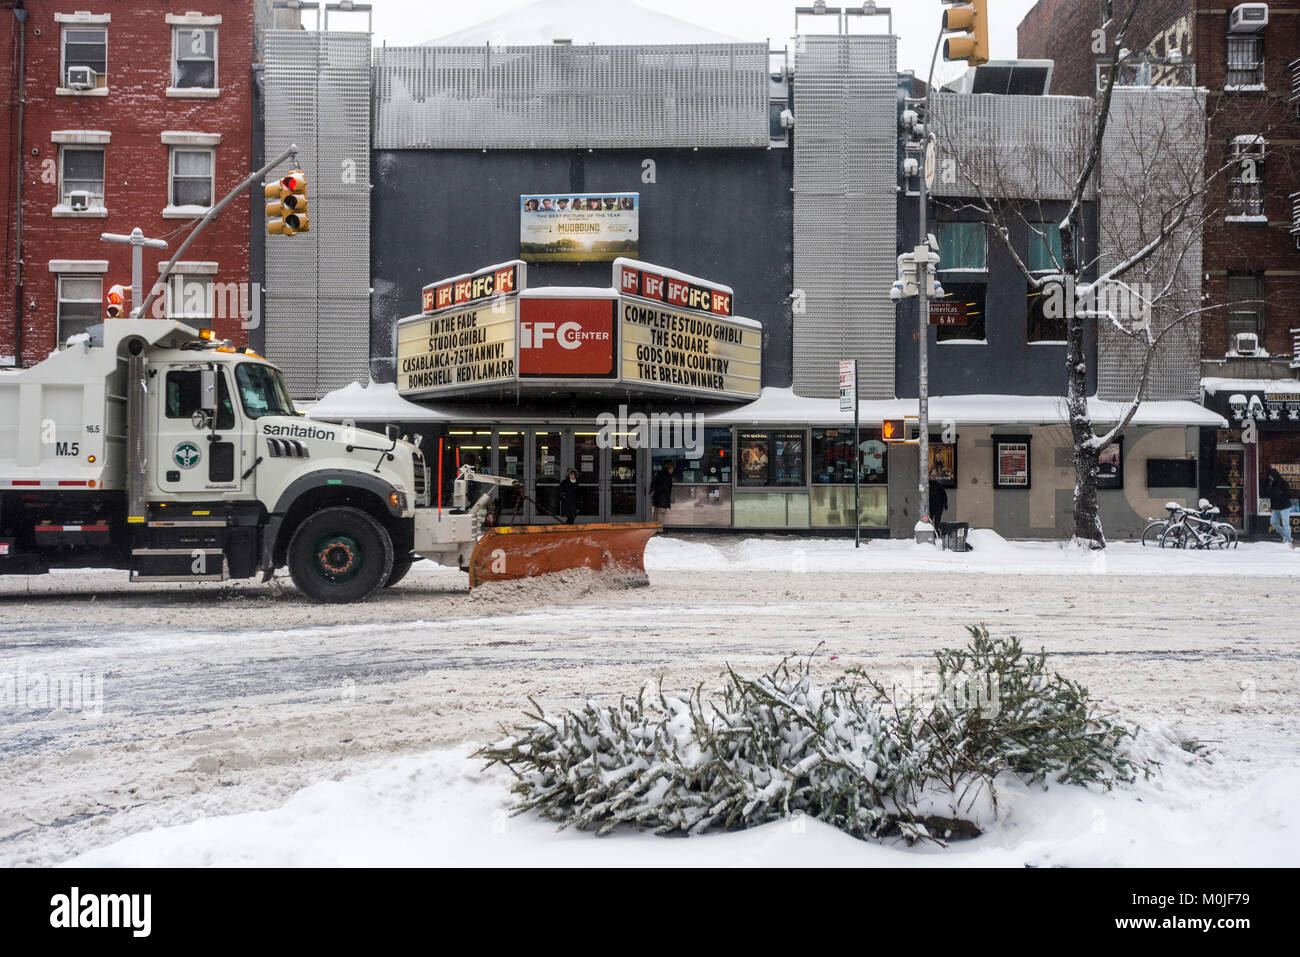 Nueva York, NY el 4 de enero de 2018 - Un camión del Departamento de Saneamiento despeja la nieve sobre la Sexta Avenida durante la tormenta de nieve después de Navidades. Foto de stock